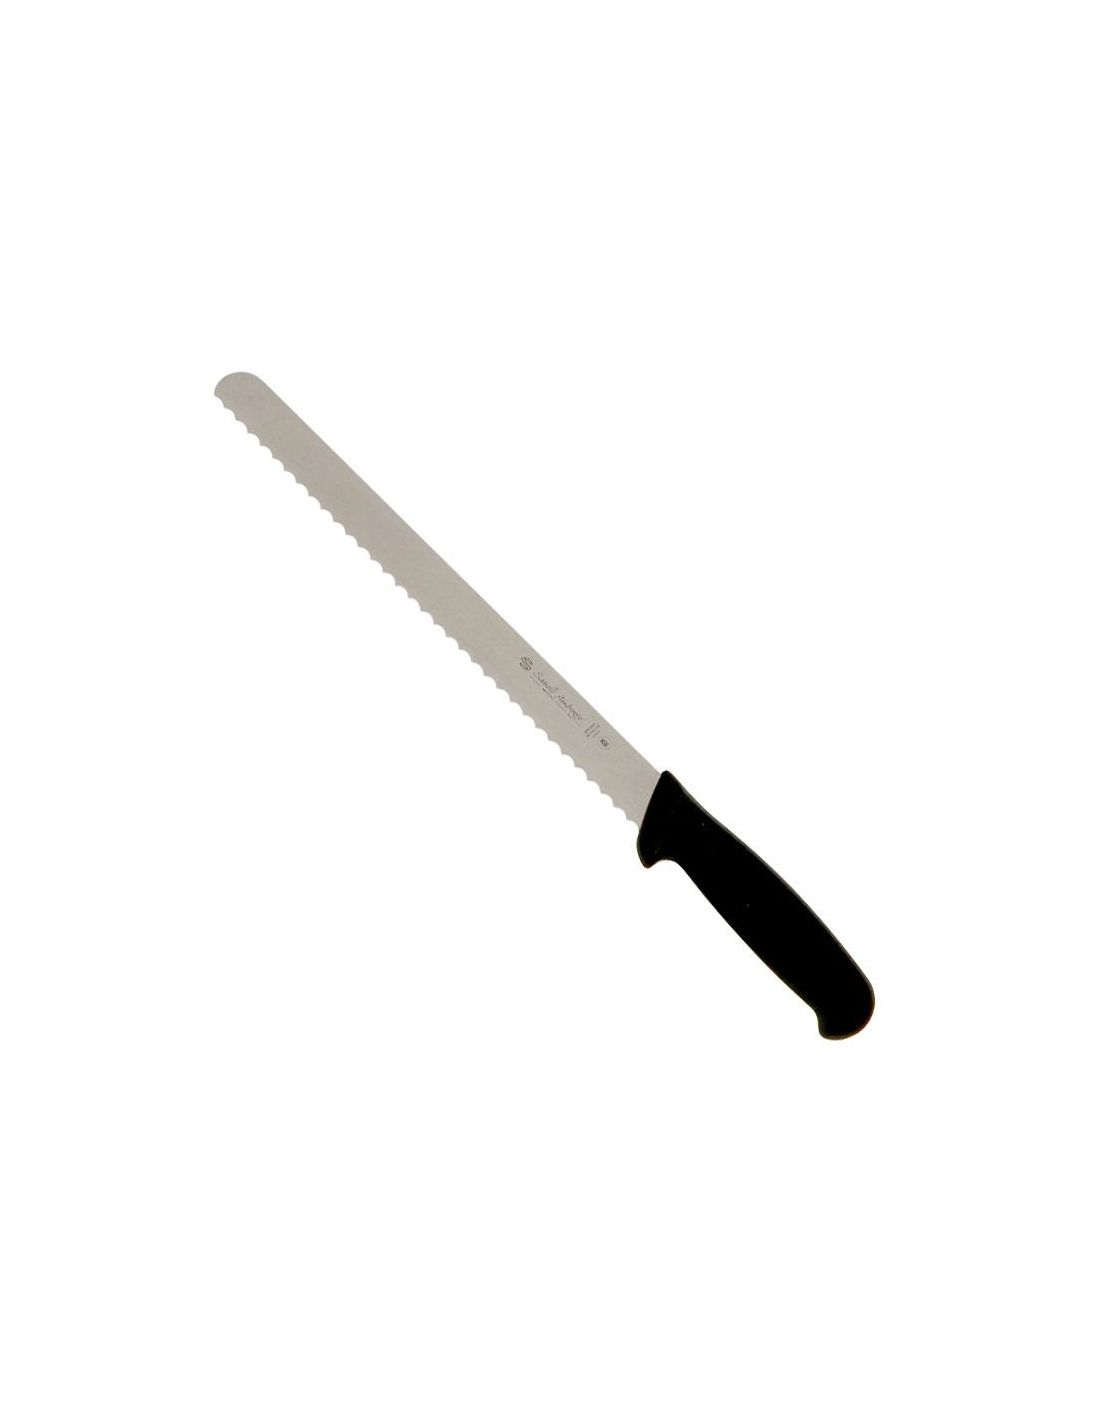 coltello per tagliare il pane Sanelli Ambrogio lama inox 28 cm